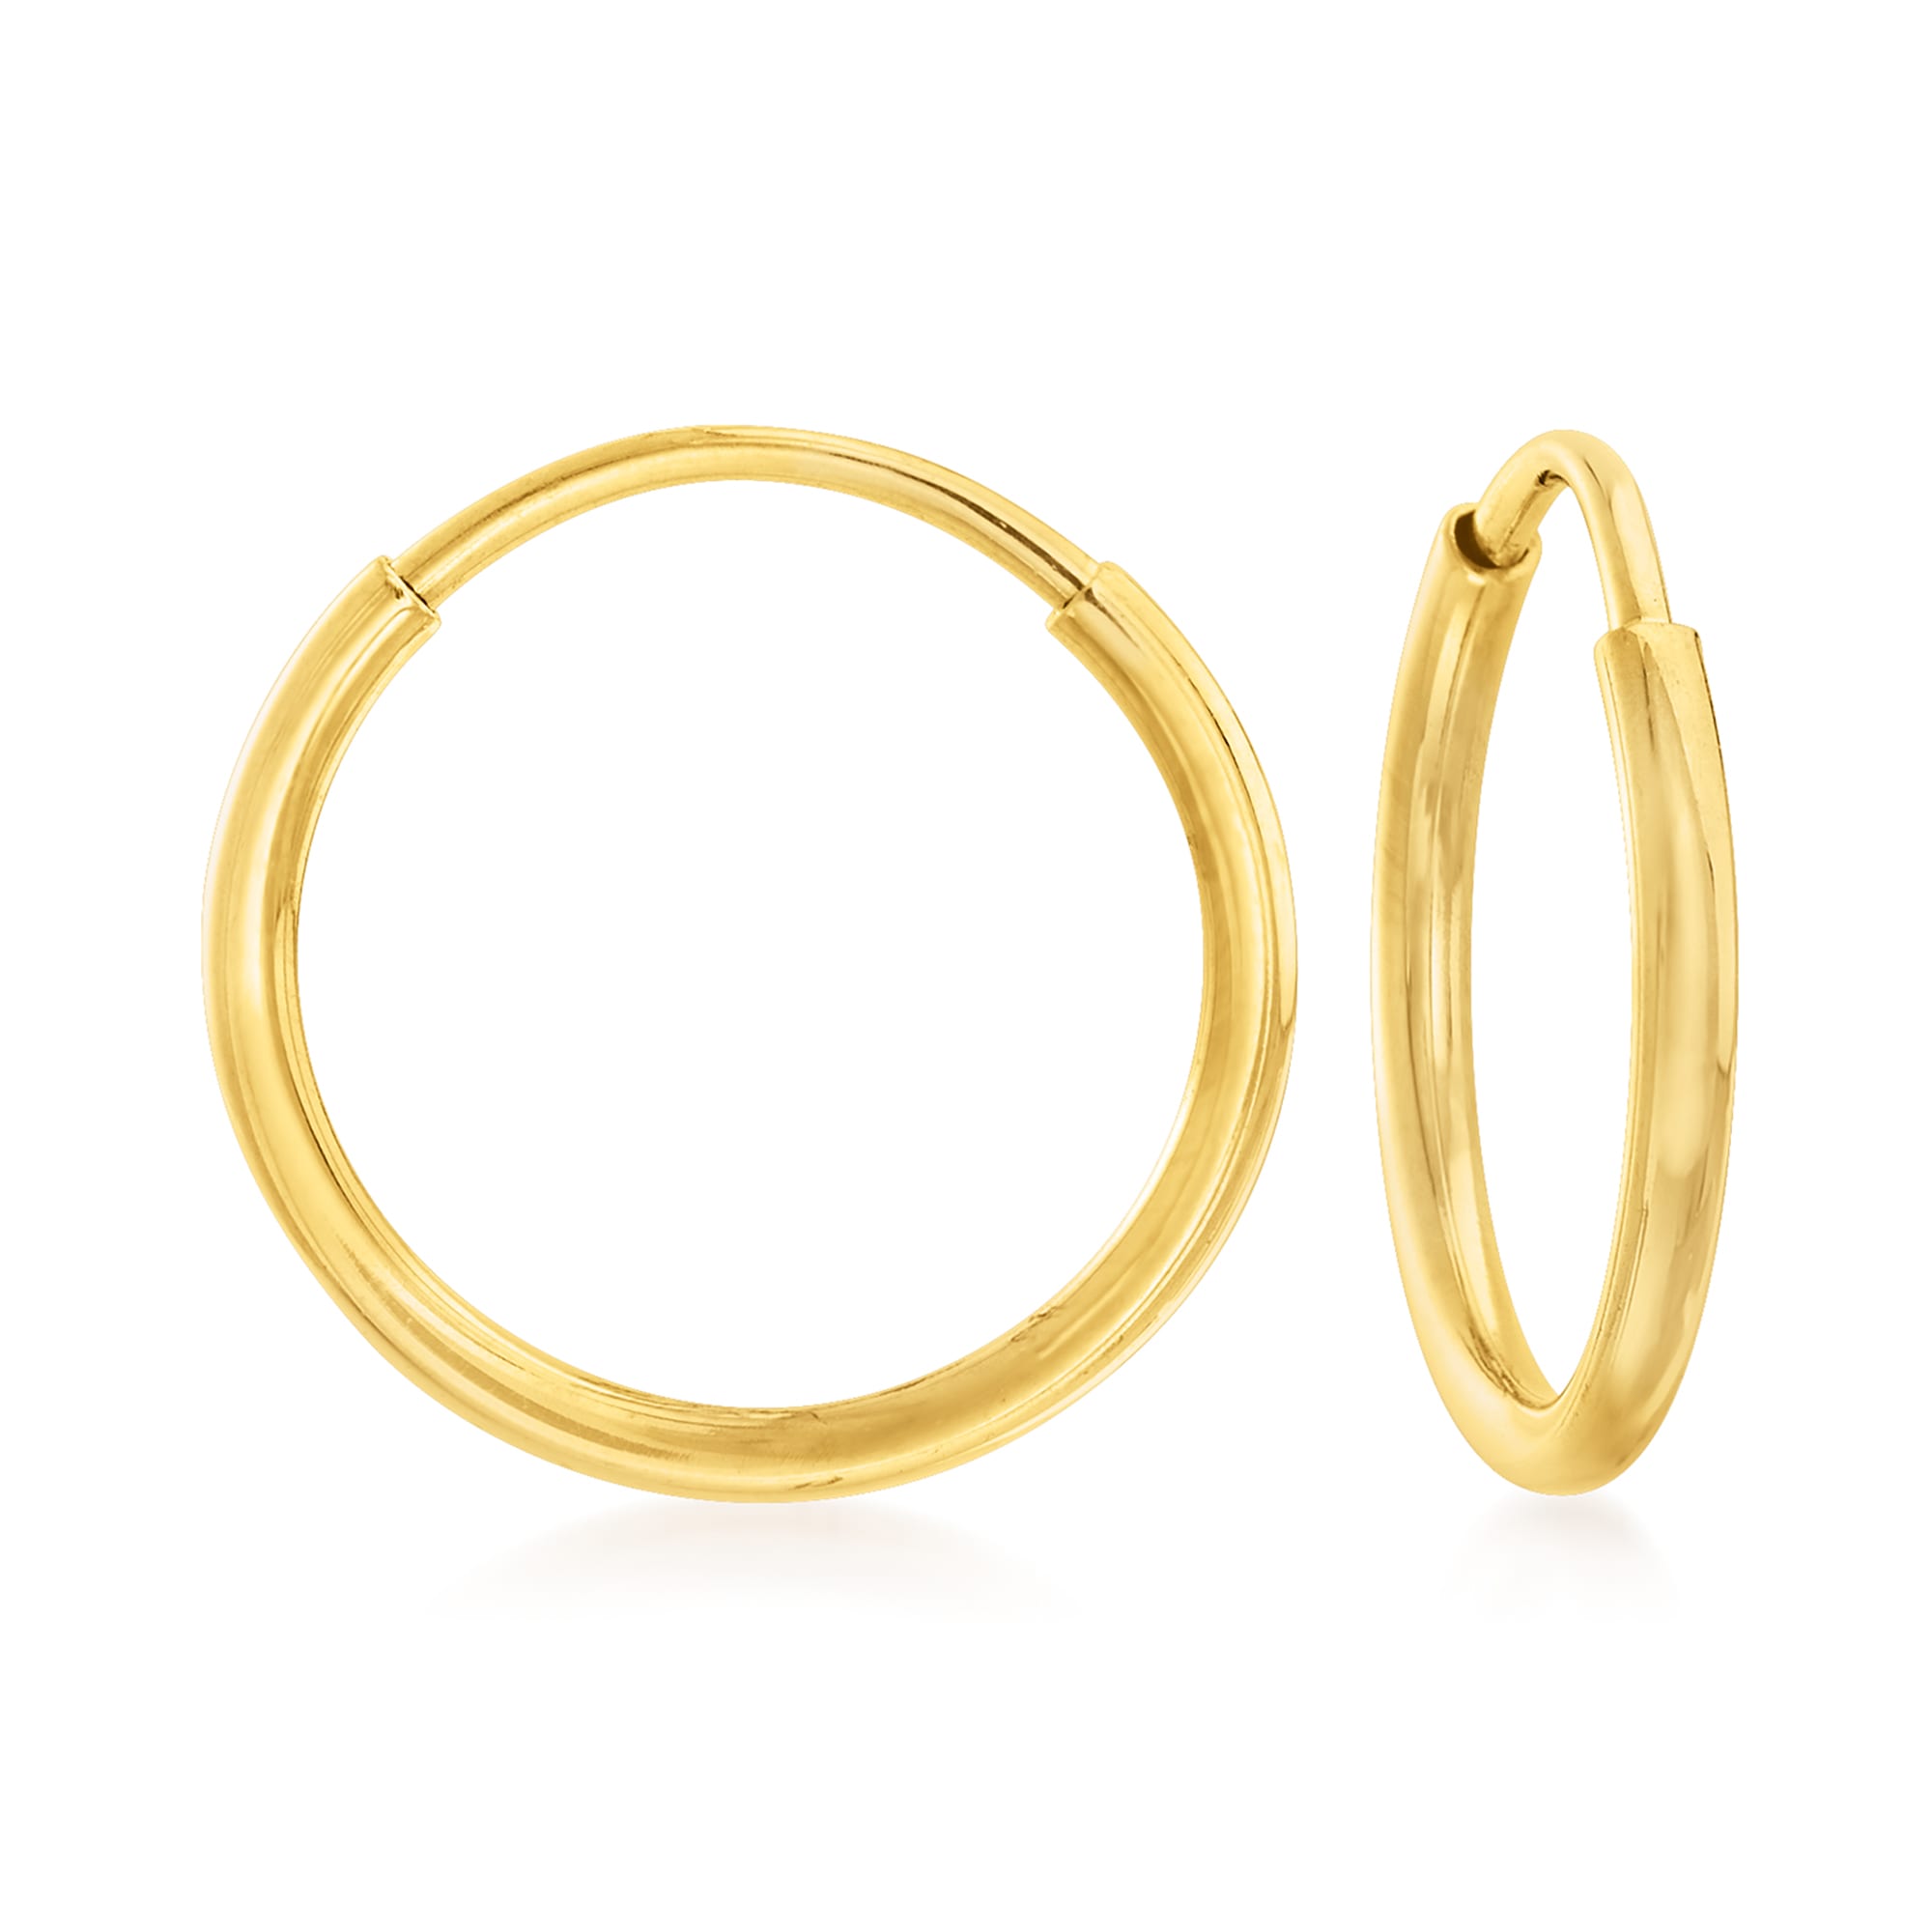 1mm 14kt Yellow Gold Endless Hoop Earrings | Ross-Simons